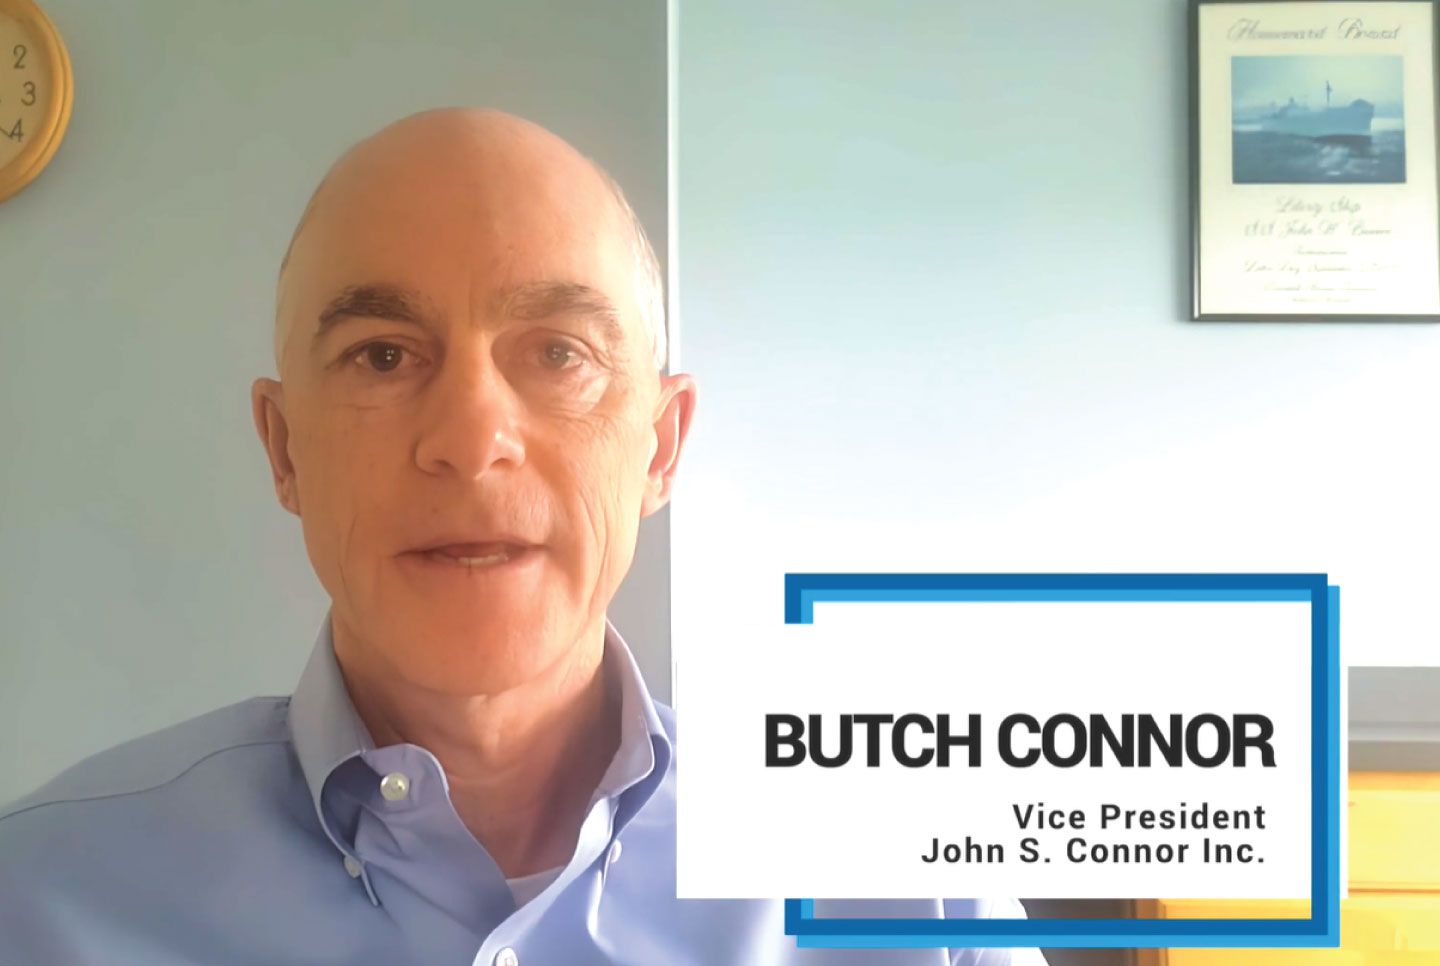 John S. Connor Inc., Butch Connor